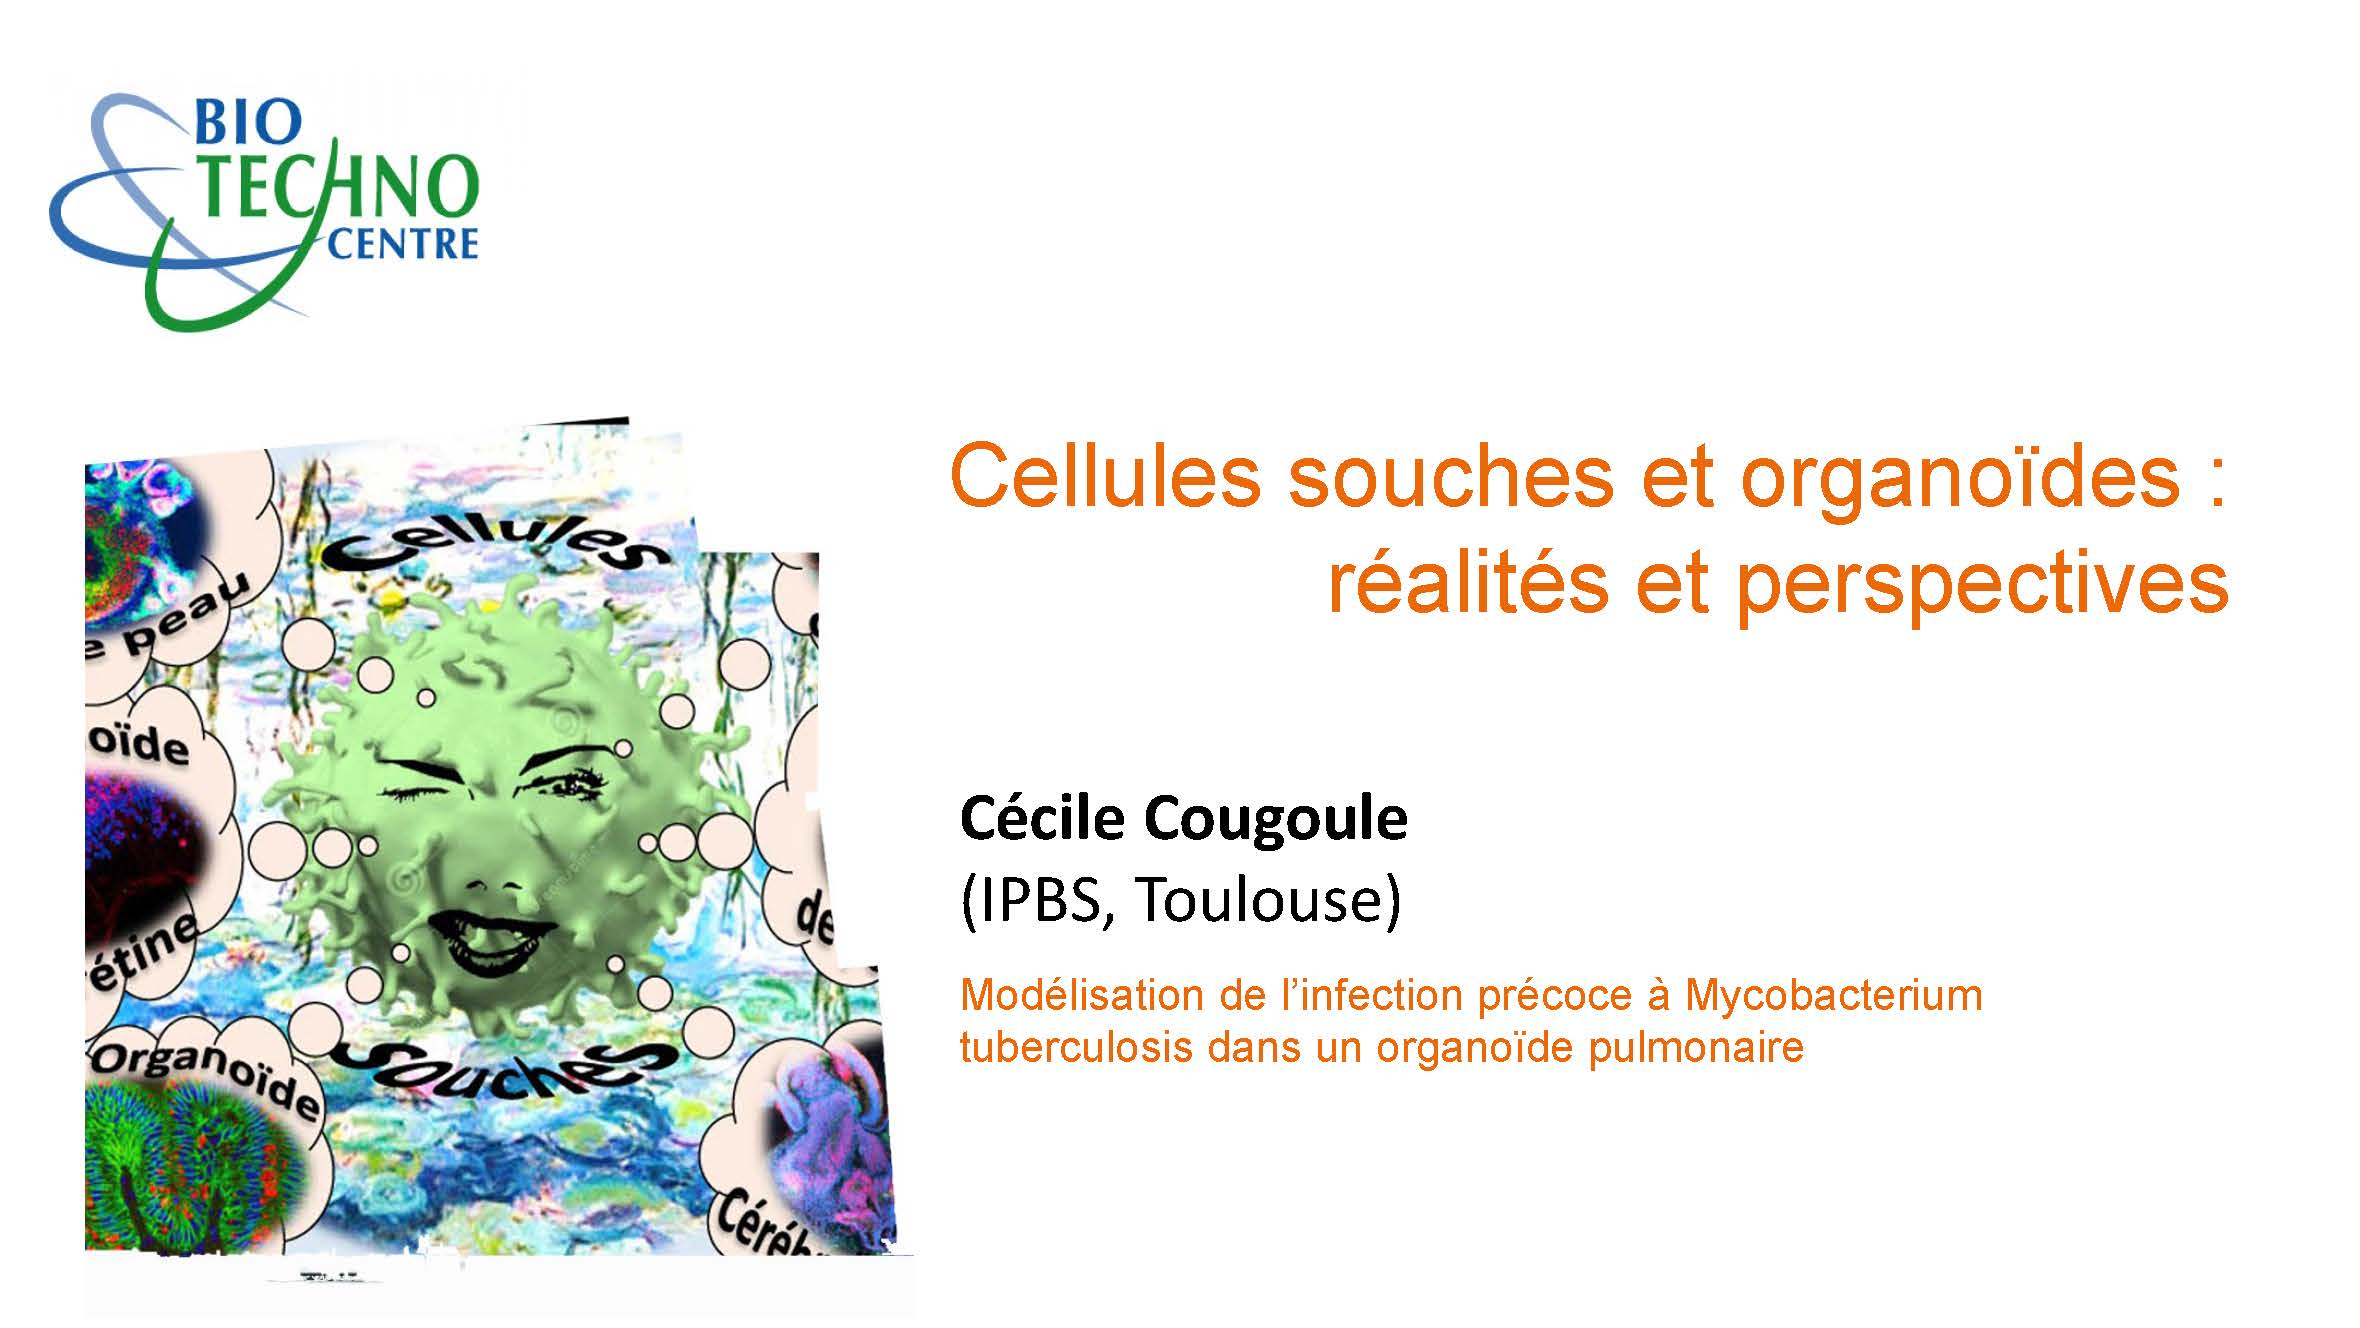 Céline Cougoule - Modélisation des infections respiratoires associées à la mucoviscidoce grâce aux organoïdes de poumon : exemple mycobacterium abscessus